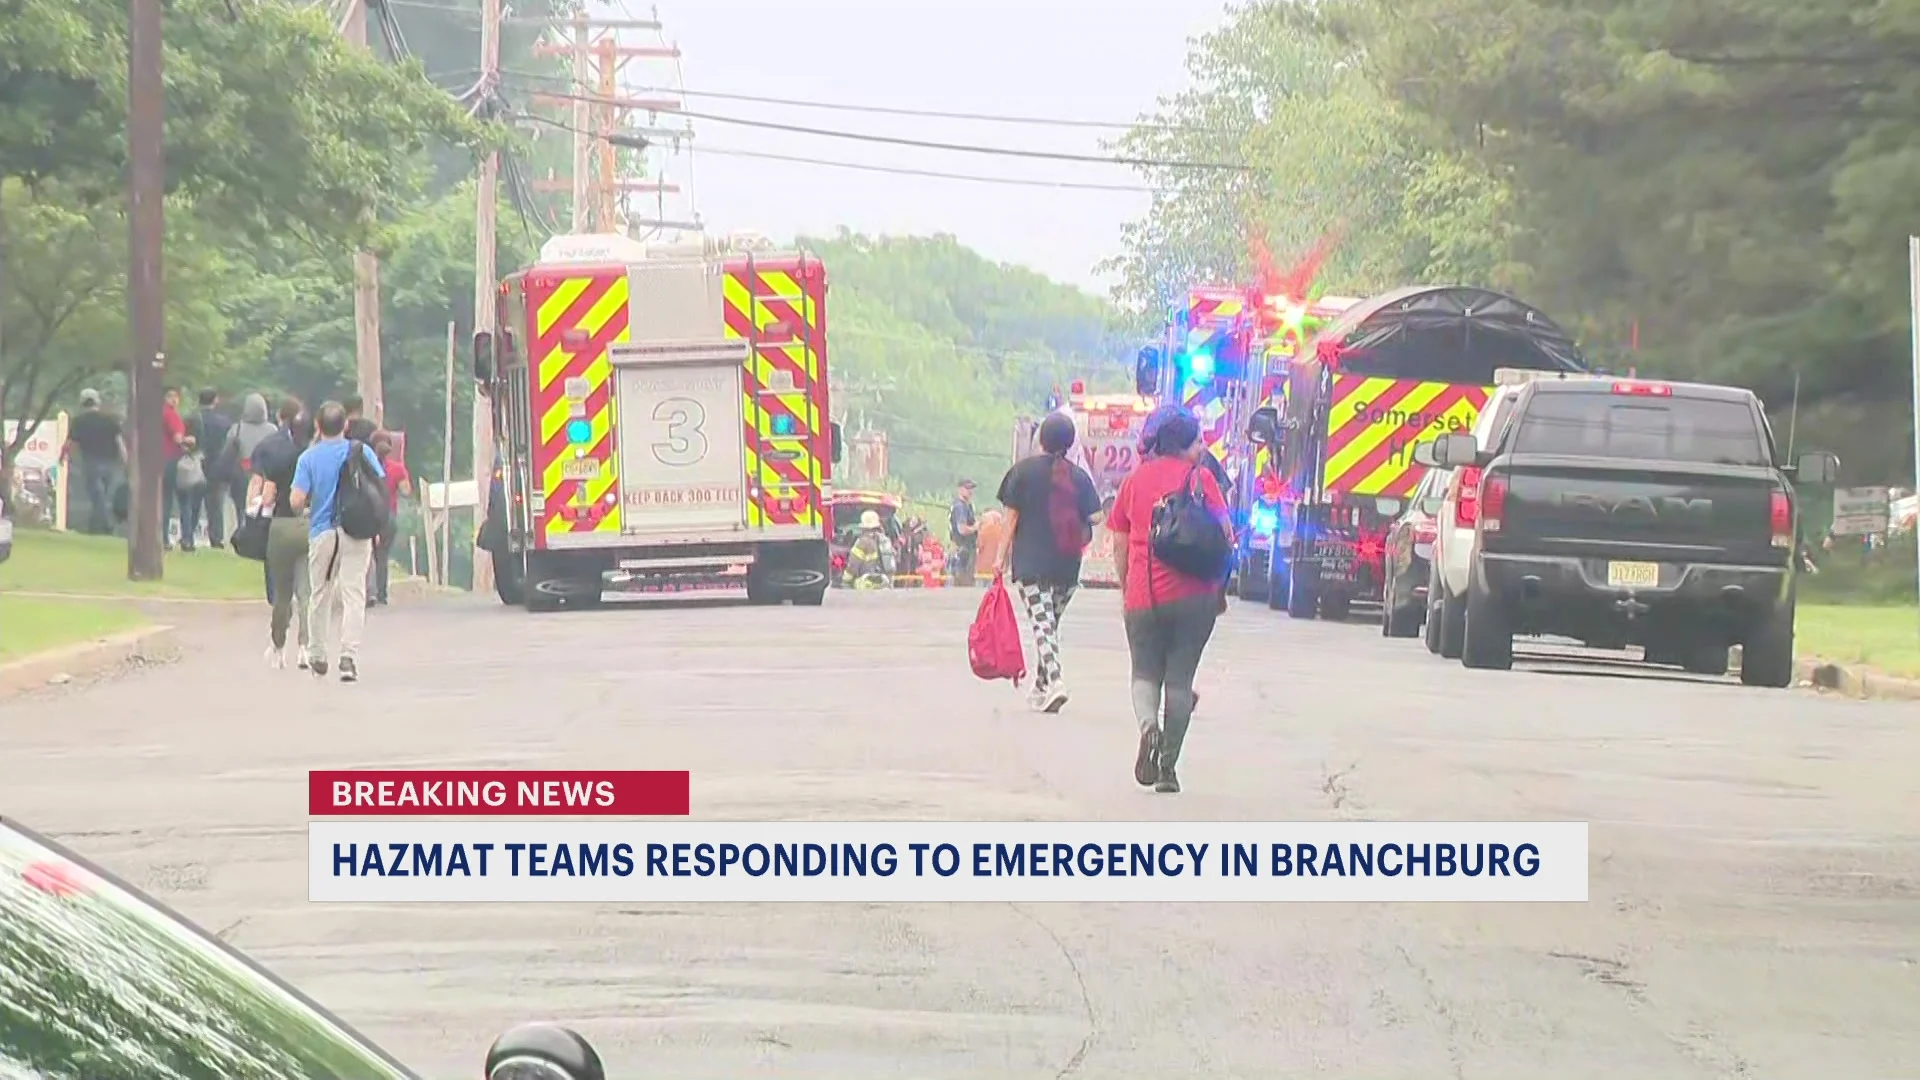 Heavy emergency presence in Branchburg near Route 22